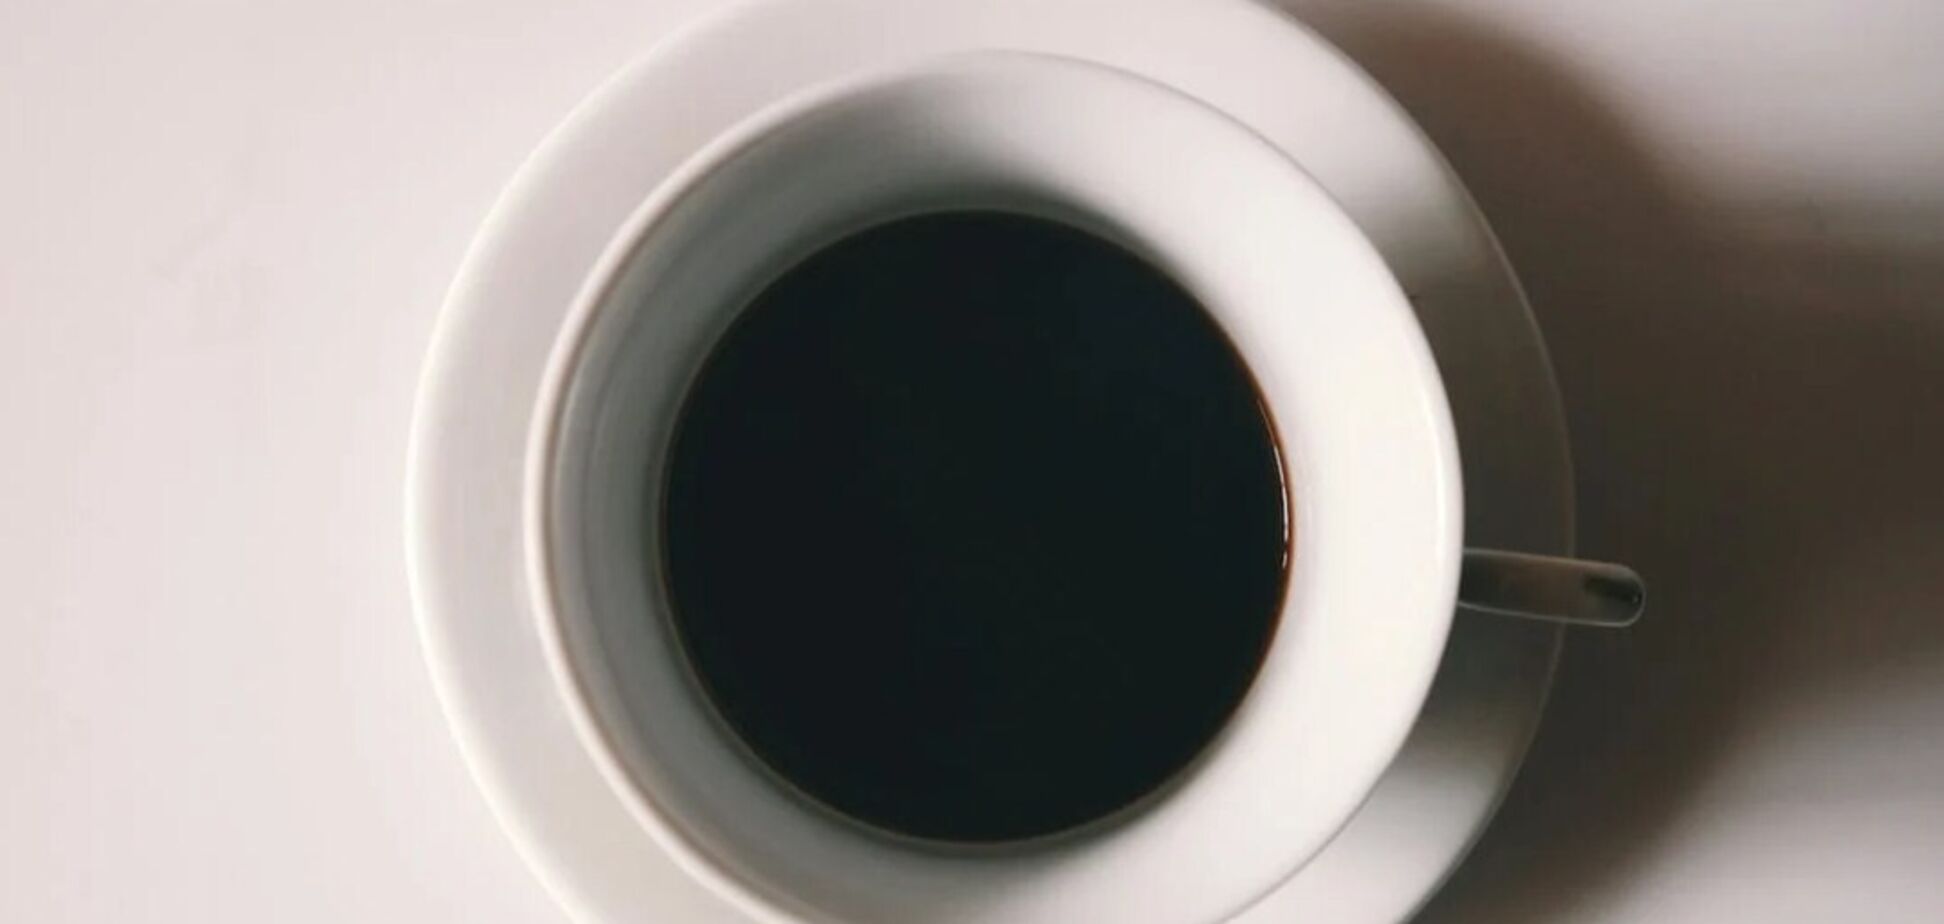 Не будет кислым и горьким: что добавить в кофе, чтобы он был еще вкуснее